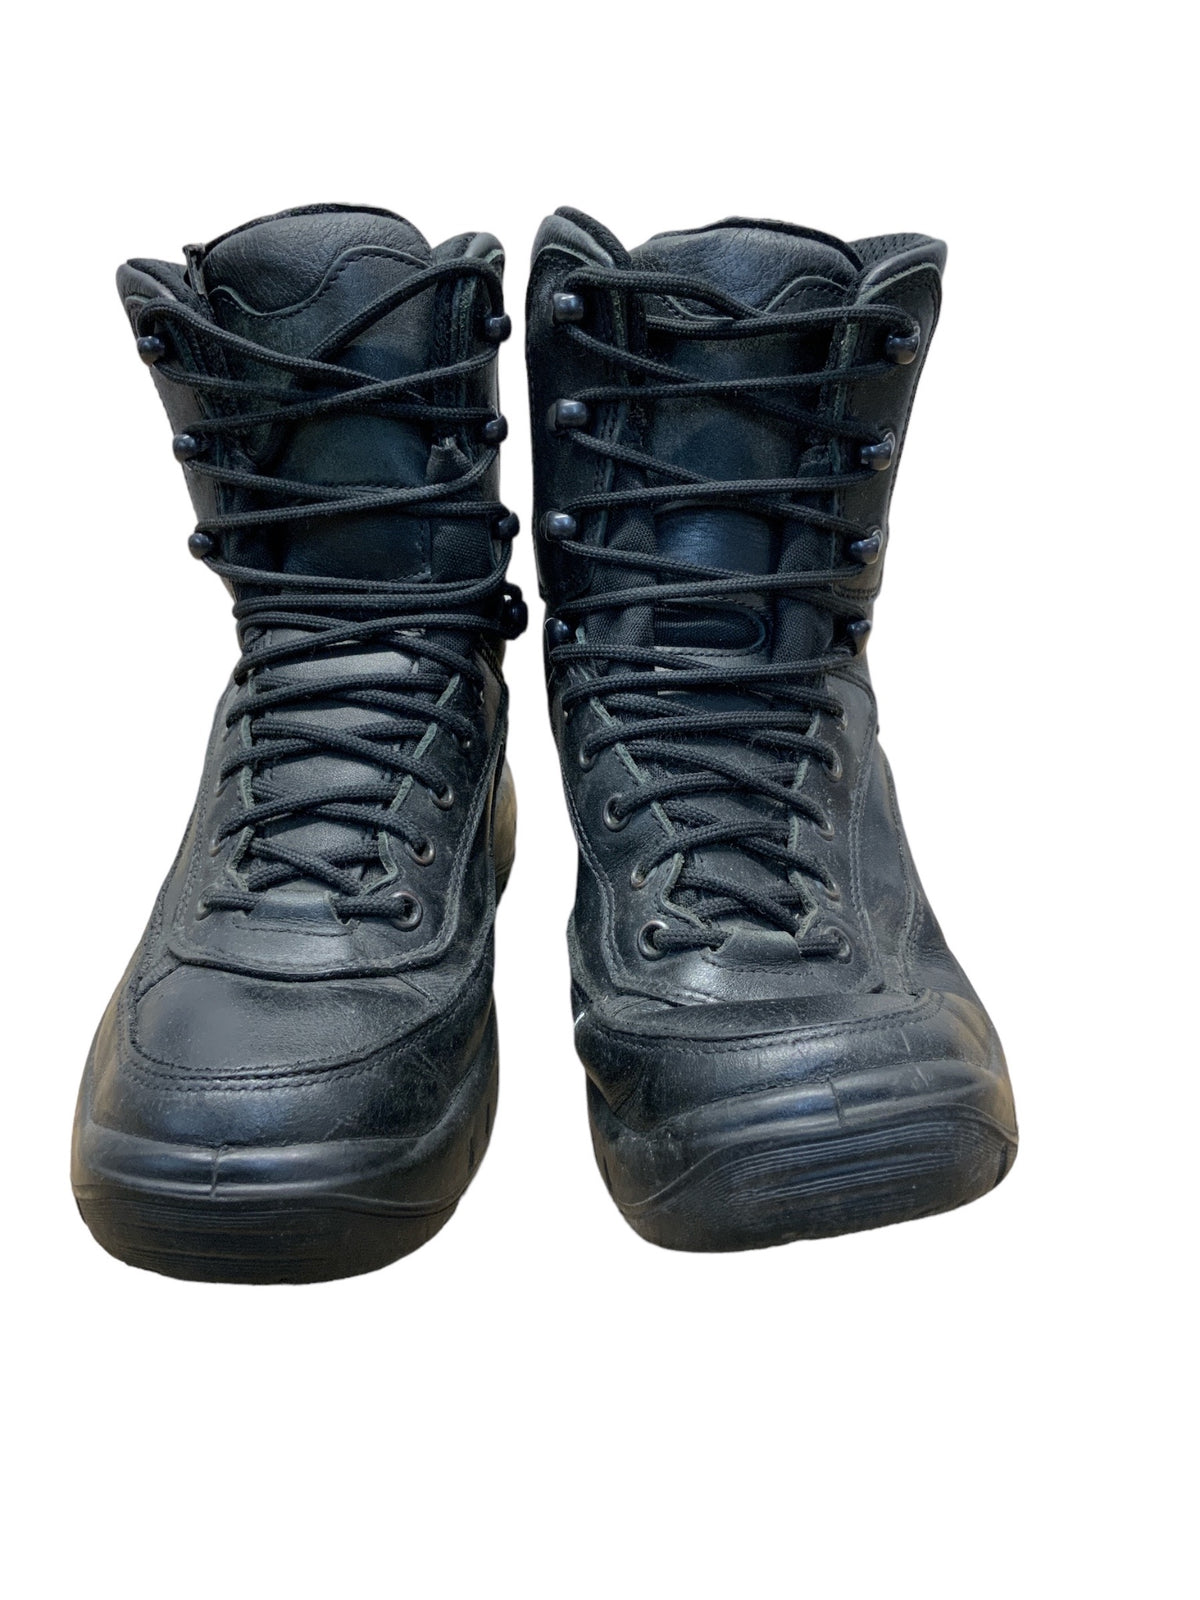 Used LOWA Recon GORE-TEX® TF Black Boots Vibram Grade B LOWA02B — One ...